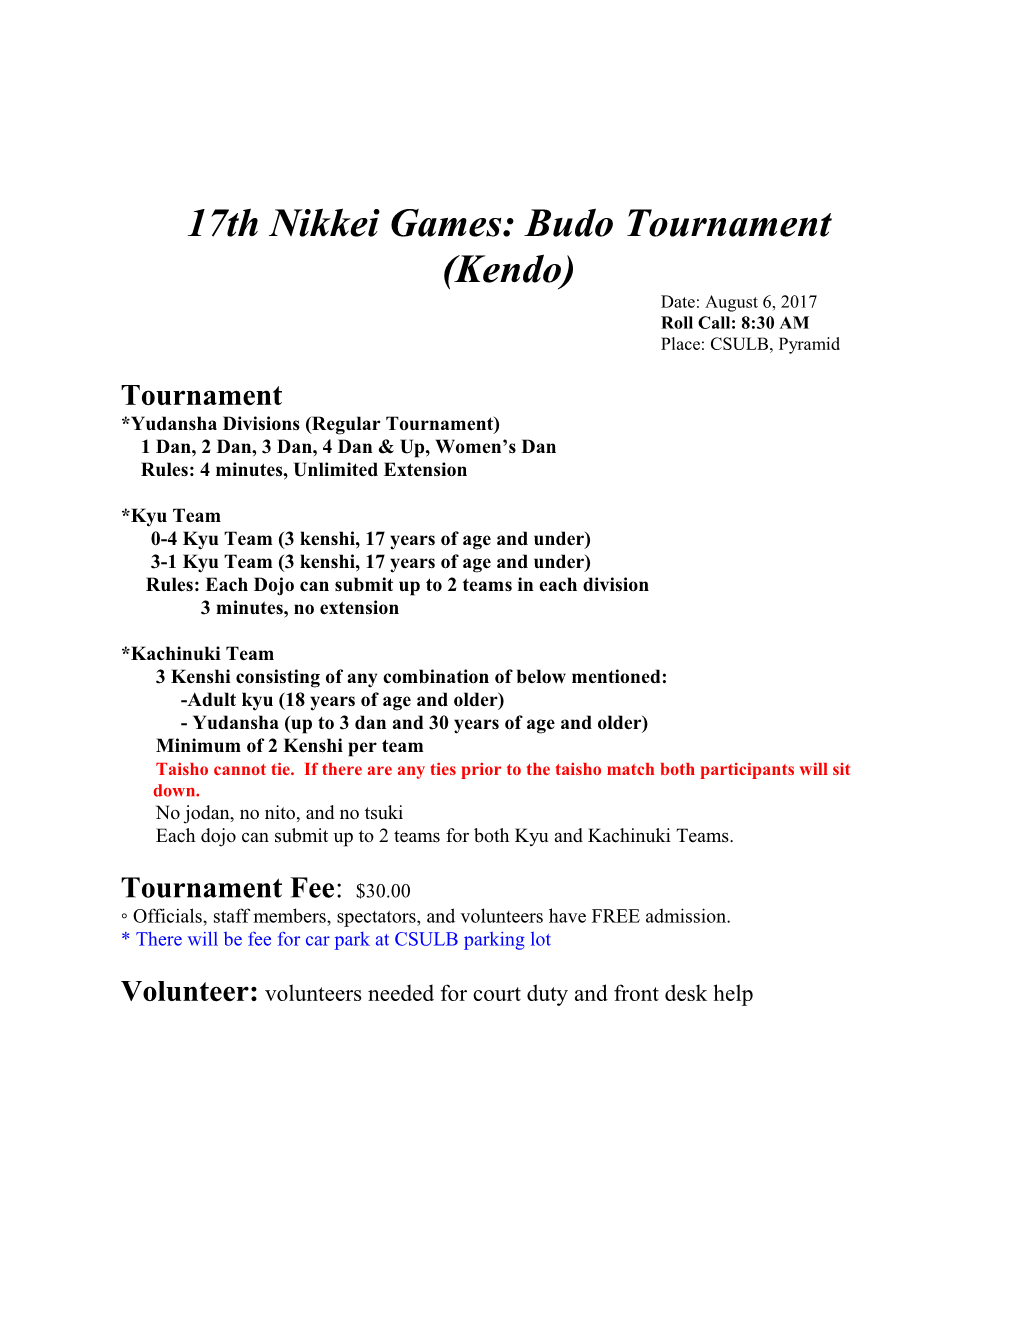 17Th Nikkei Games: Budo Tournament (Kendo)